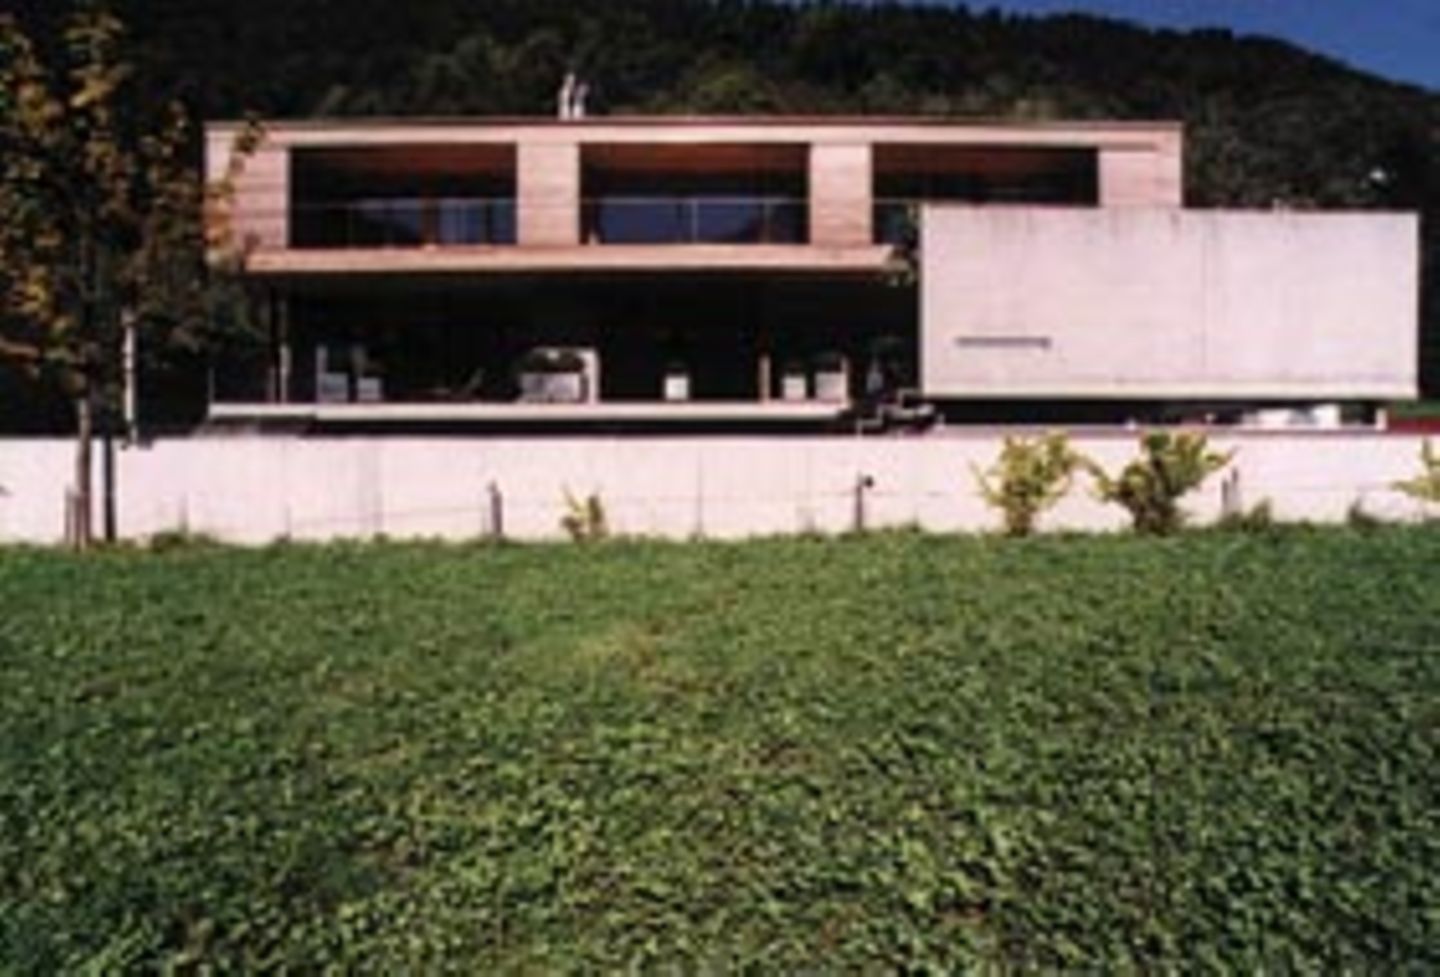 Haus Ratz in Bizau bietet kontrastreiche Räume unter dem Flachdach.